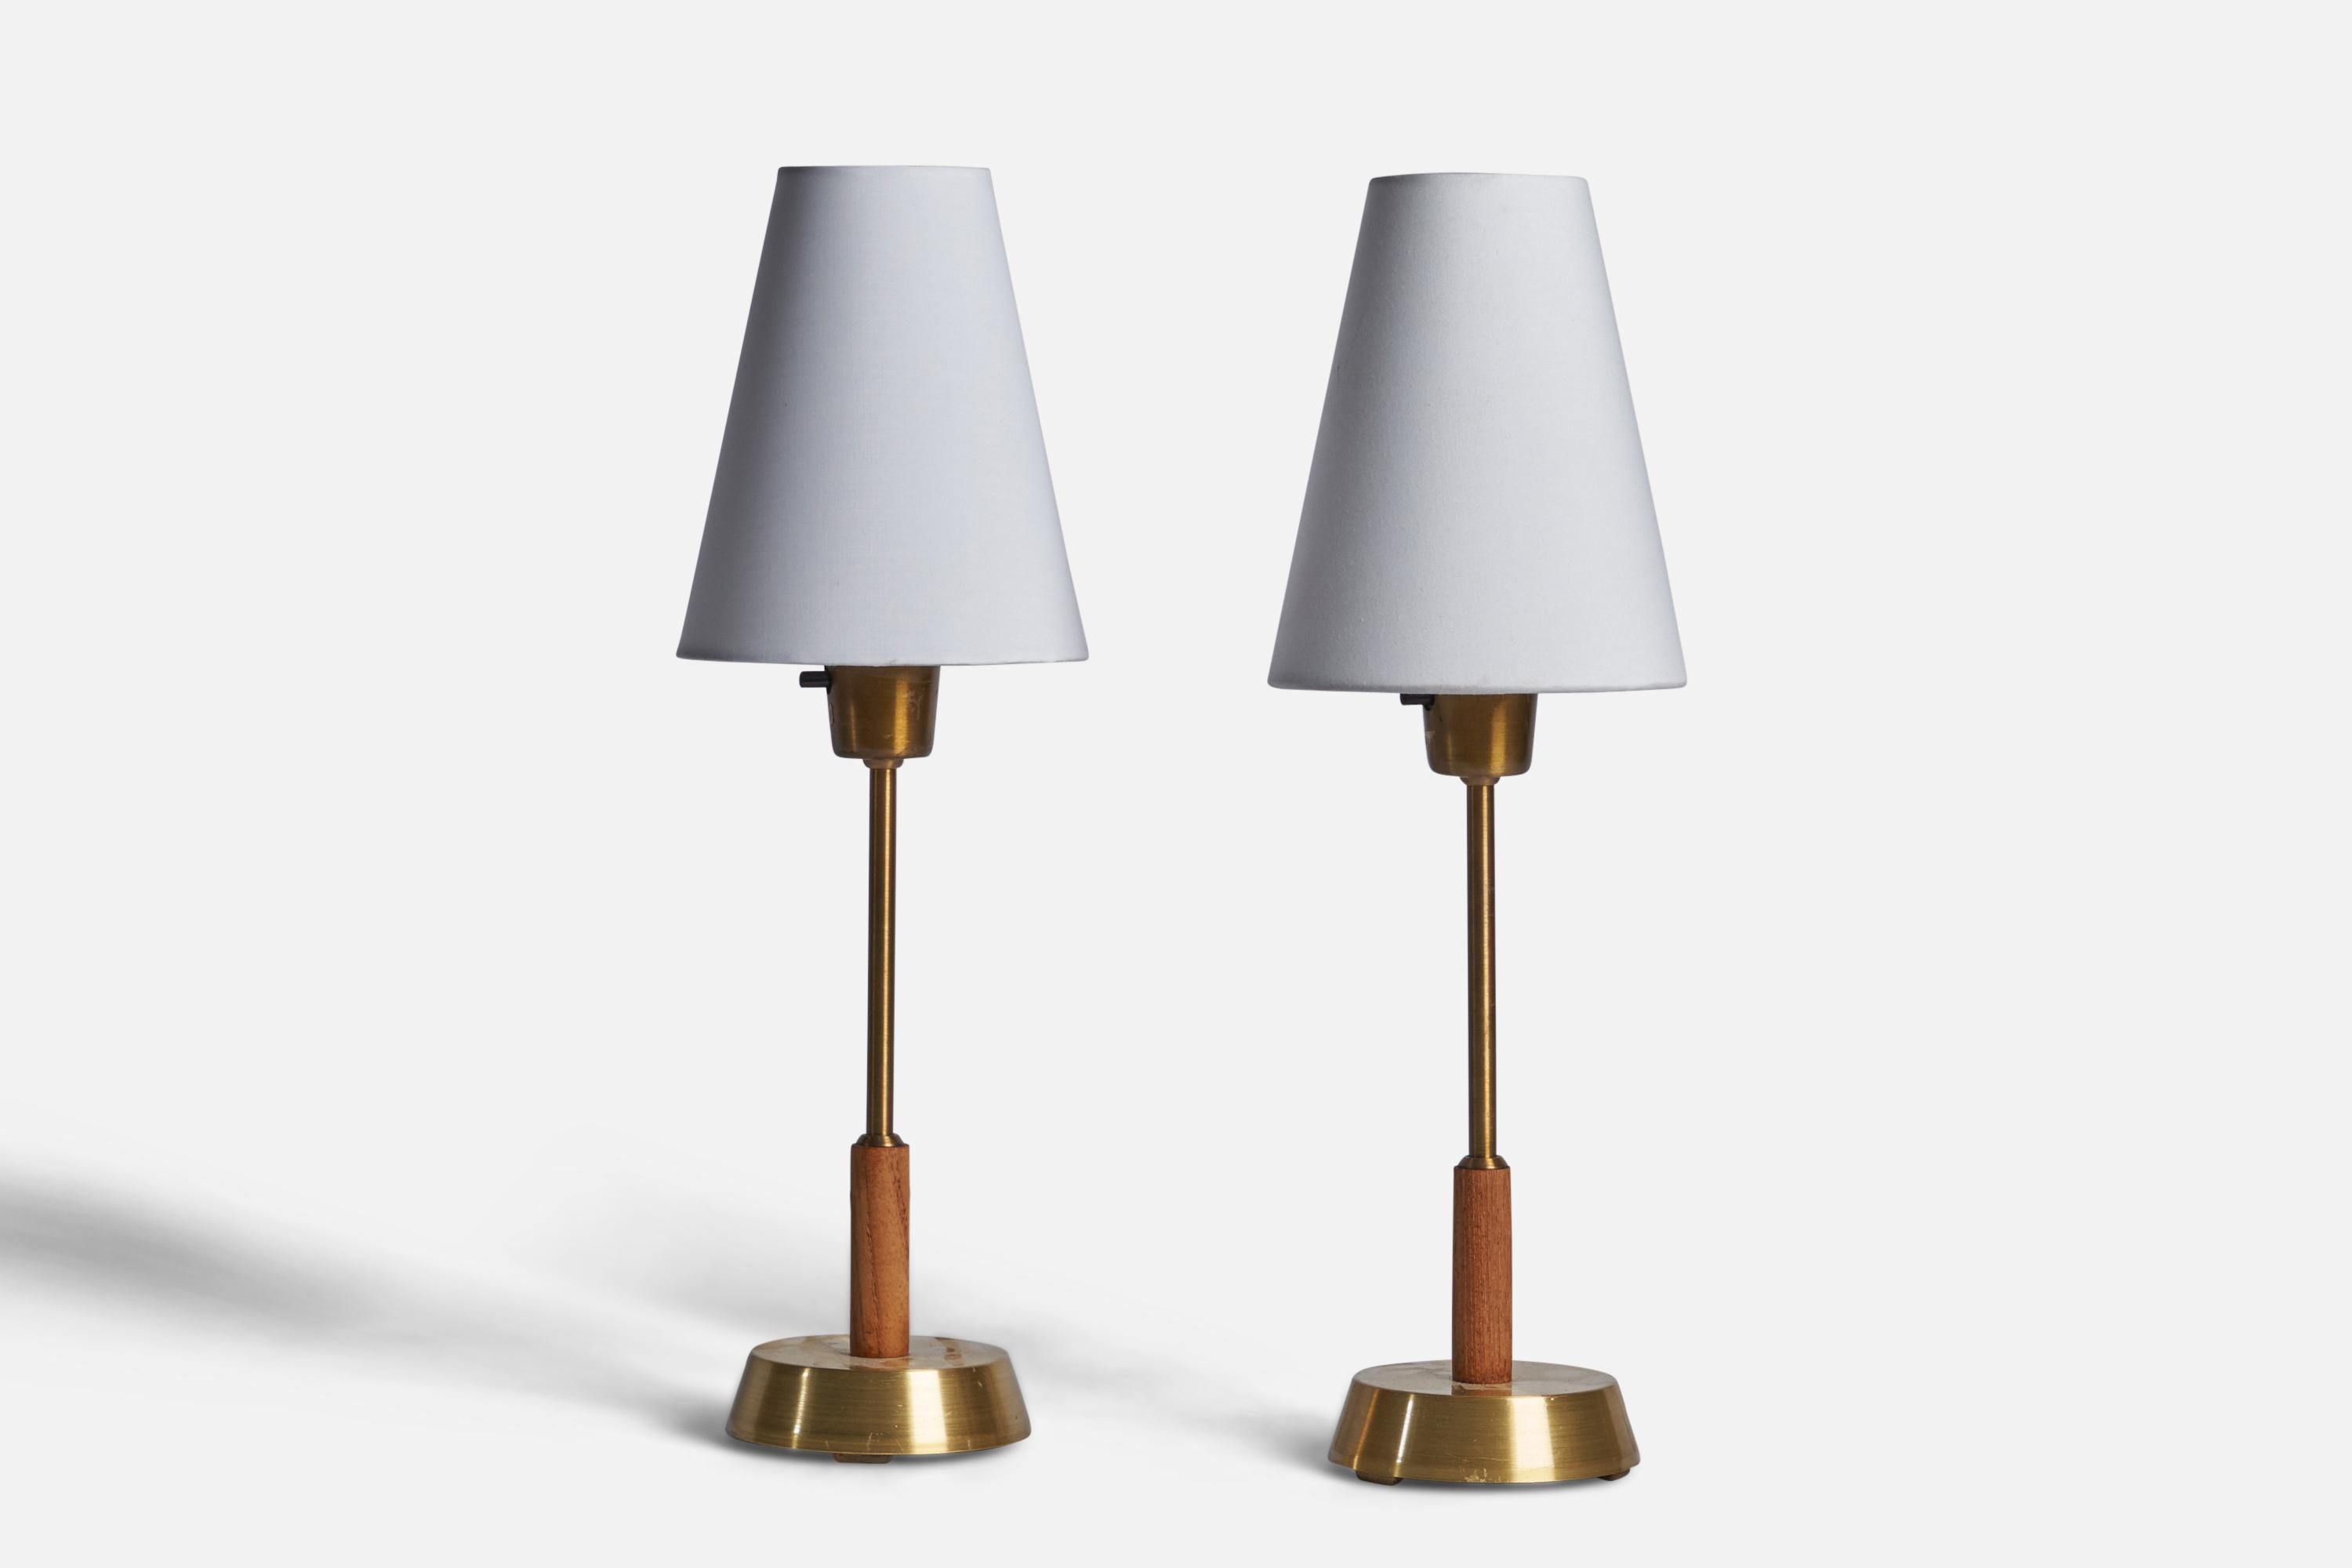 Ein Paar Tischlampen aus Messing, Teakholz und weißem Stoff, entworfen und hergestellt in Schweden, 1950er Jahre.

Abmessungen der Lampe (Zoll): 12